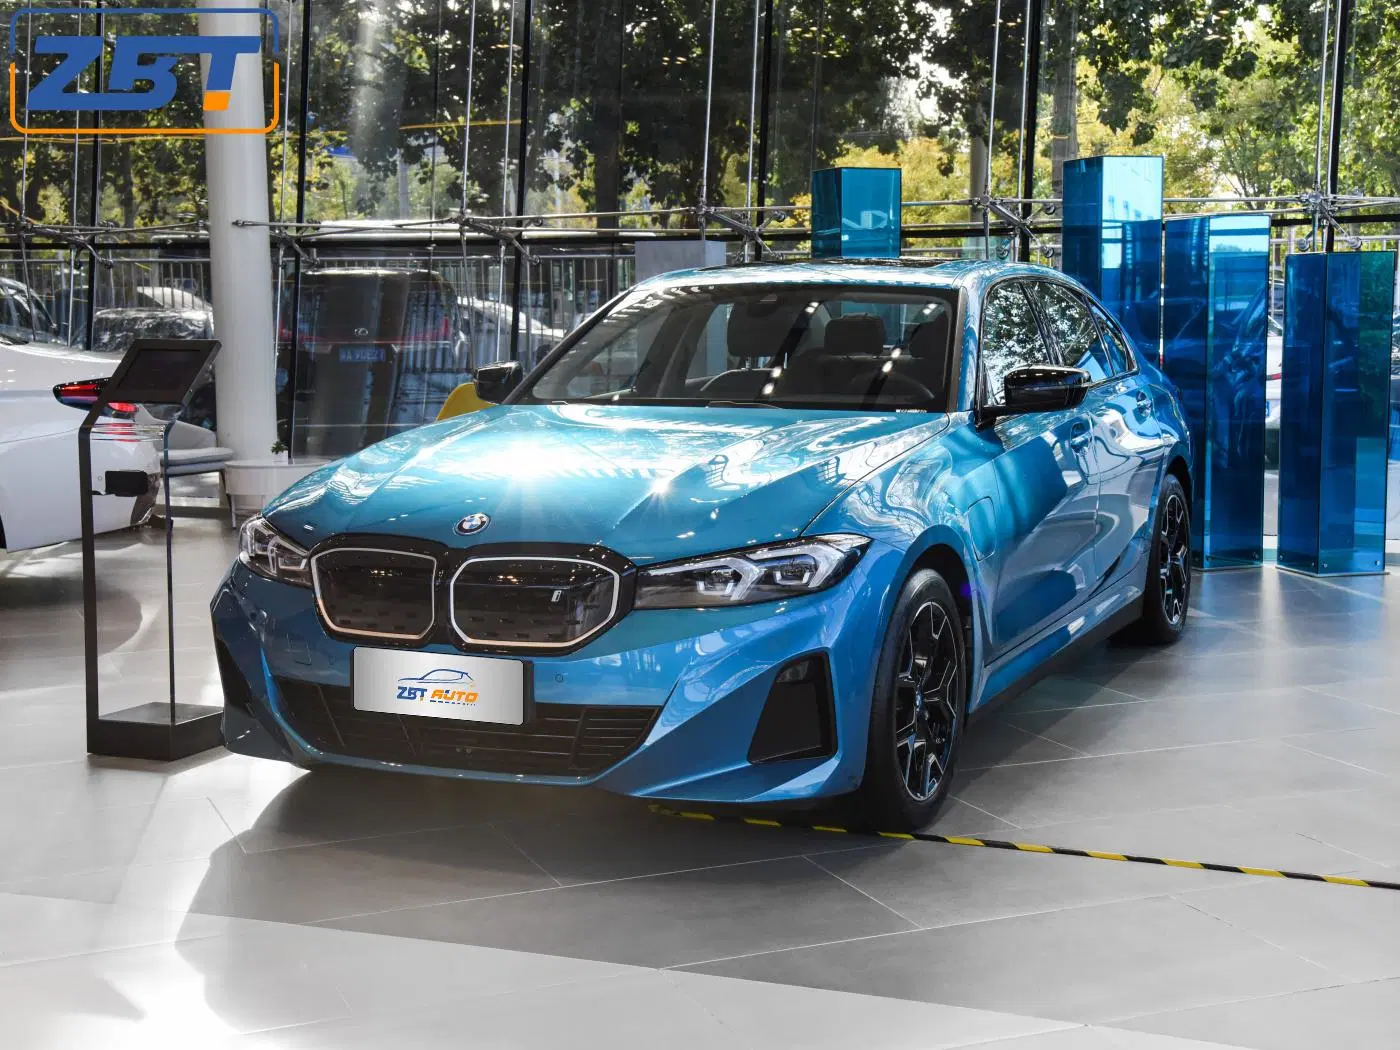 BMW el coche usado I3 vehículos nuevos de energía Electromobil hecho En China Venta coche eléctrico